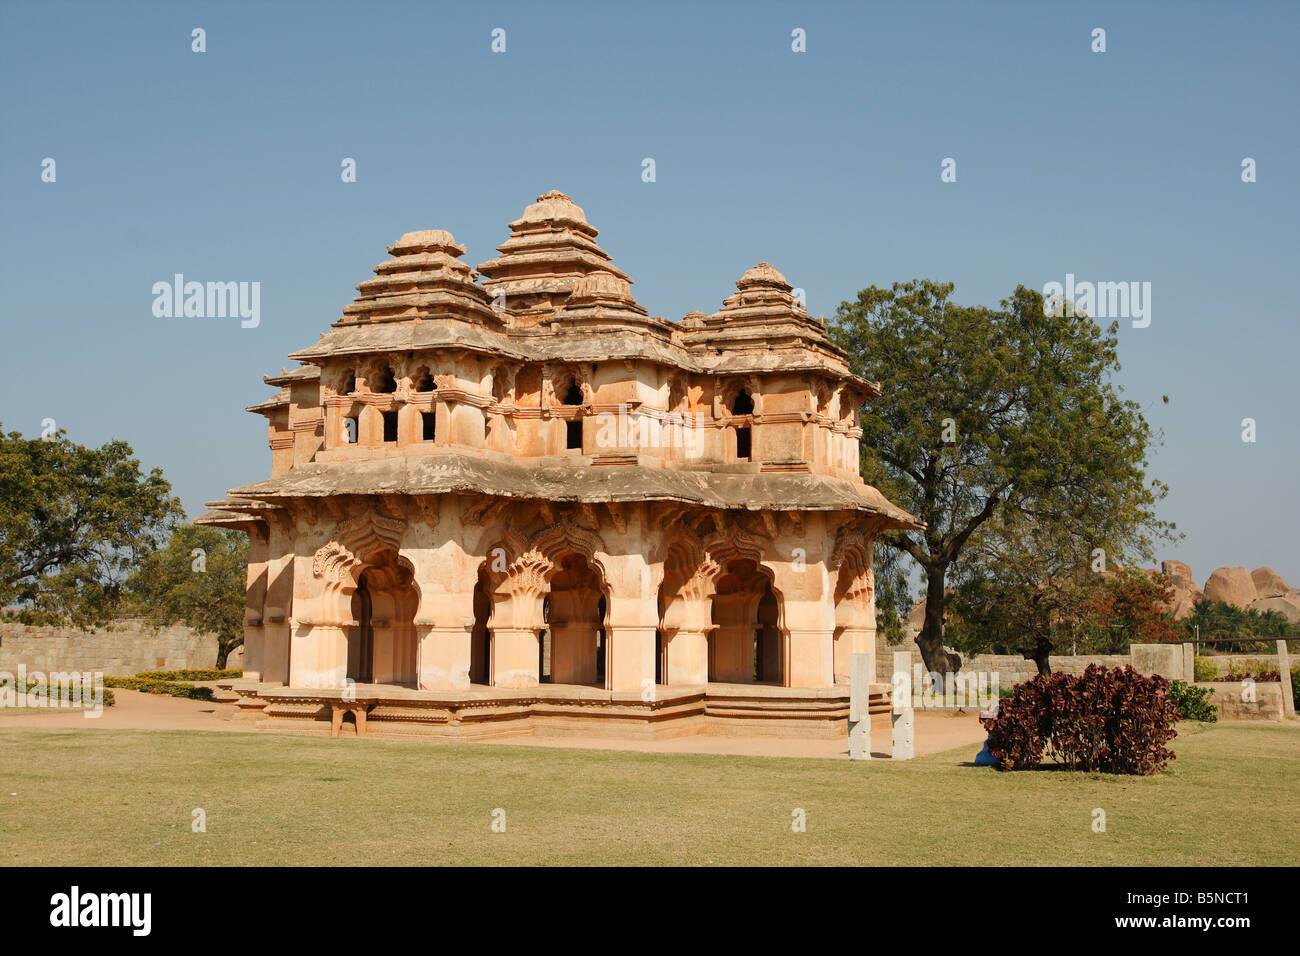 Lotus Mahal temple at the ancient site of Hampi, Karnataka, India Stock Photo